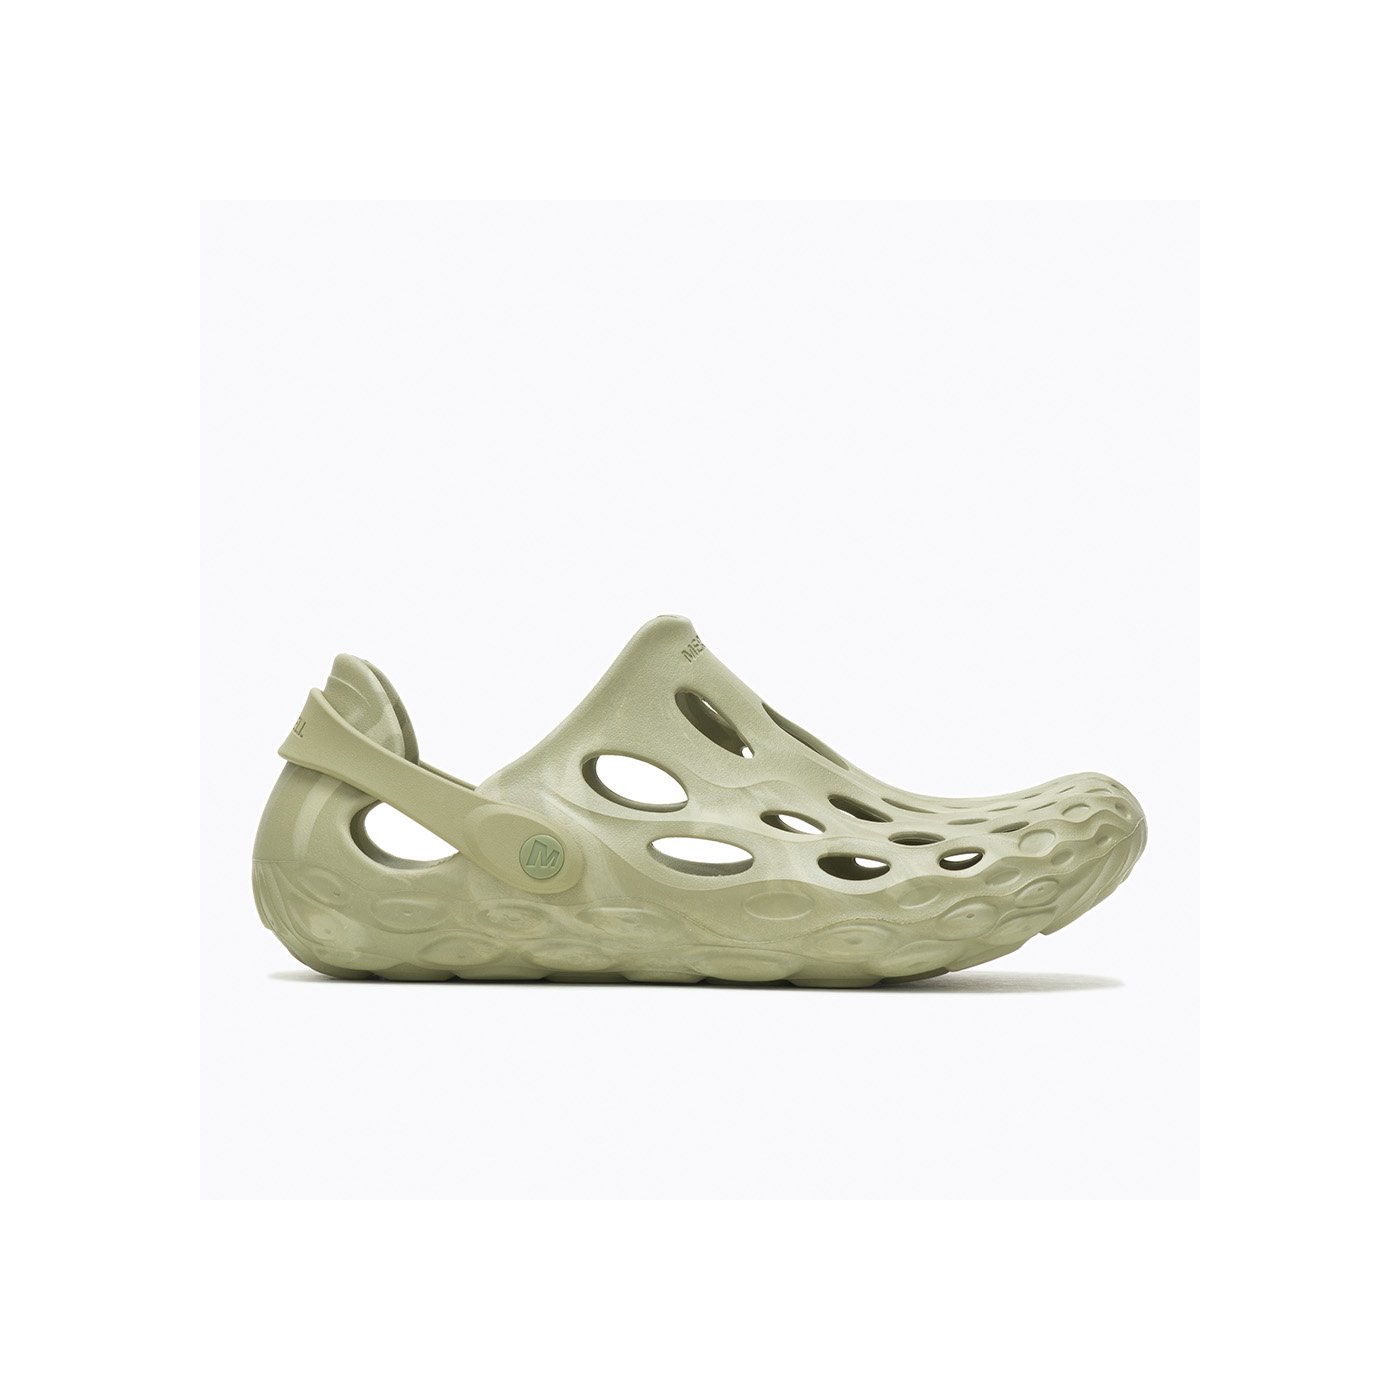 Merrell Hydro Moc Erkek Su Ayakkabısı - Yeşil - 1